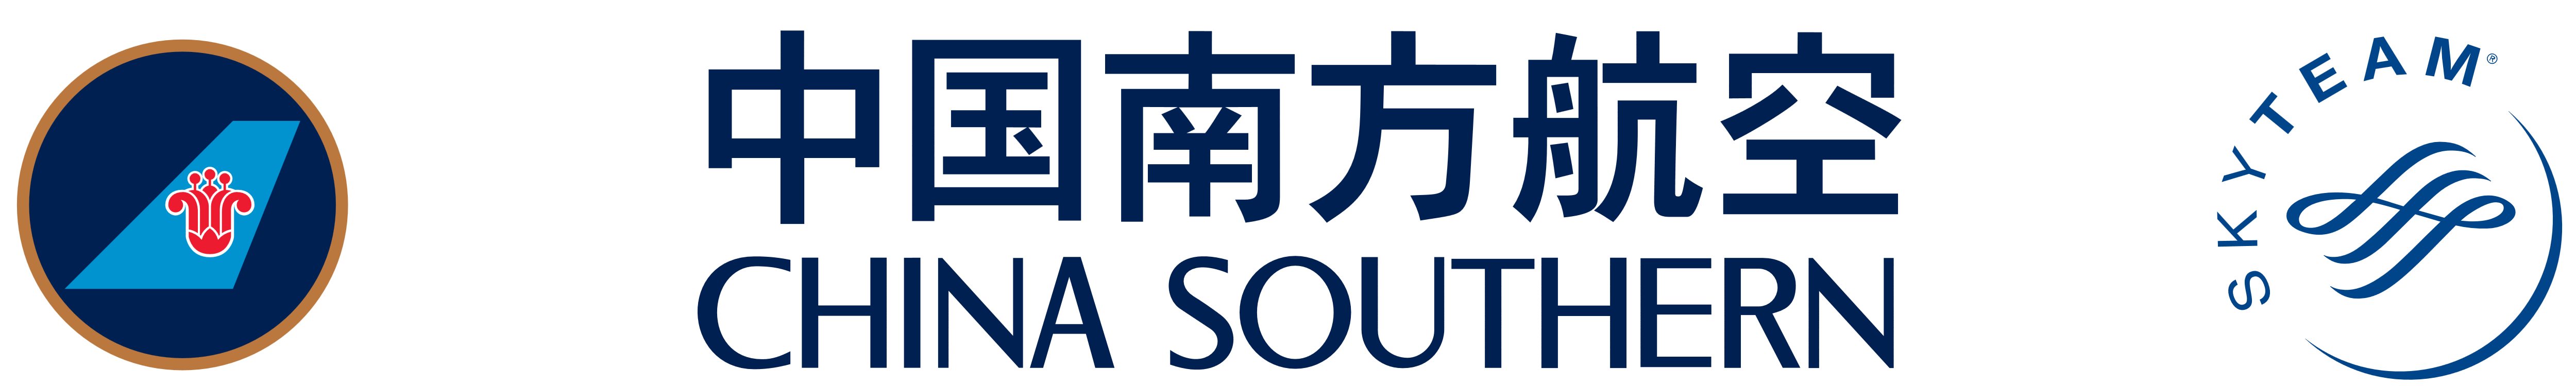 China Southern logo China Sou